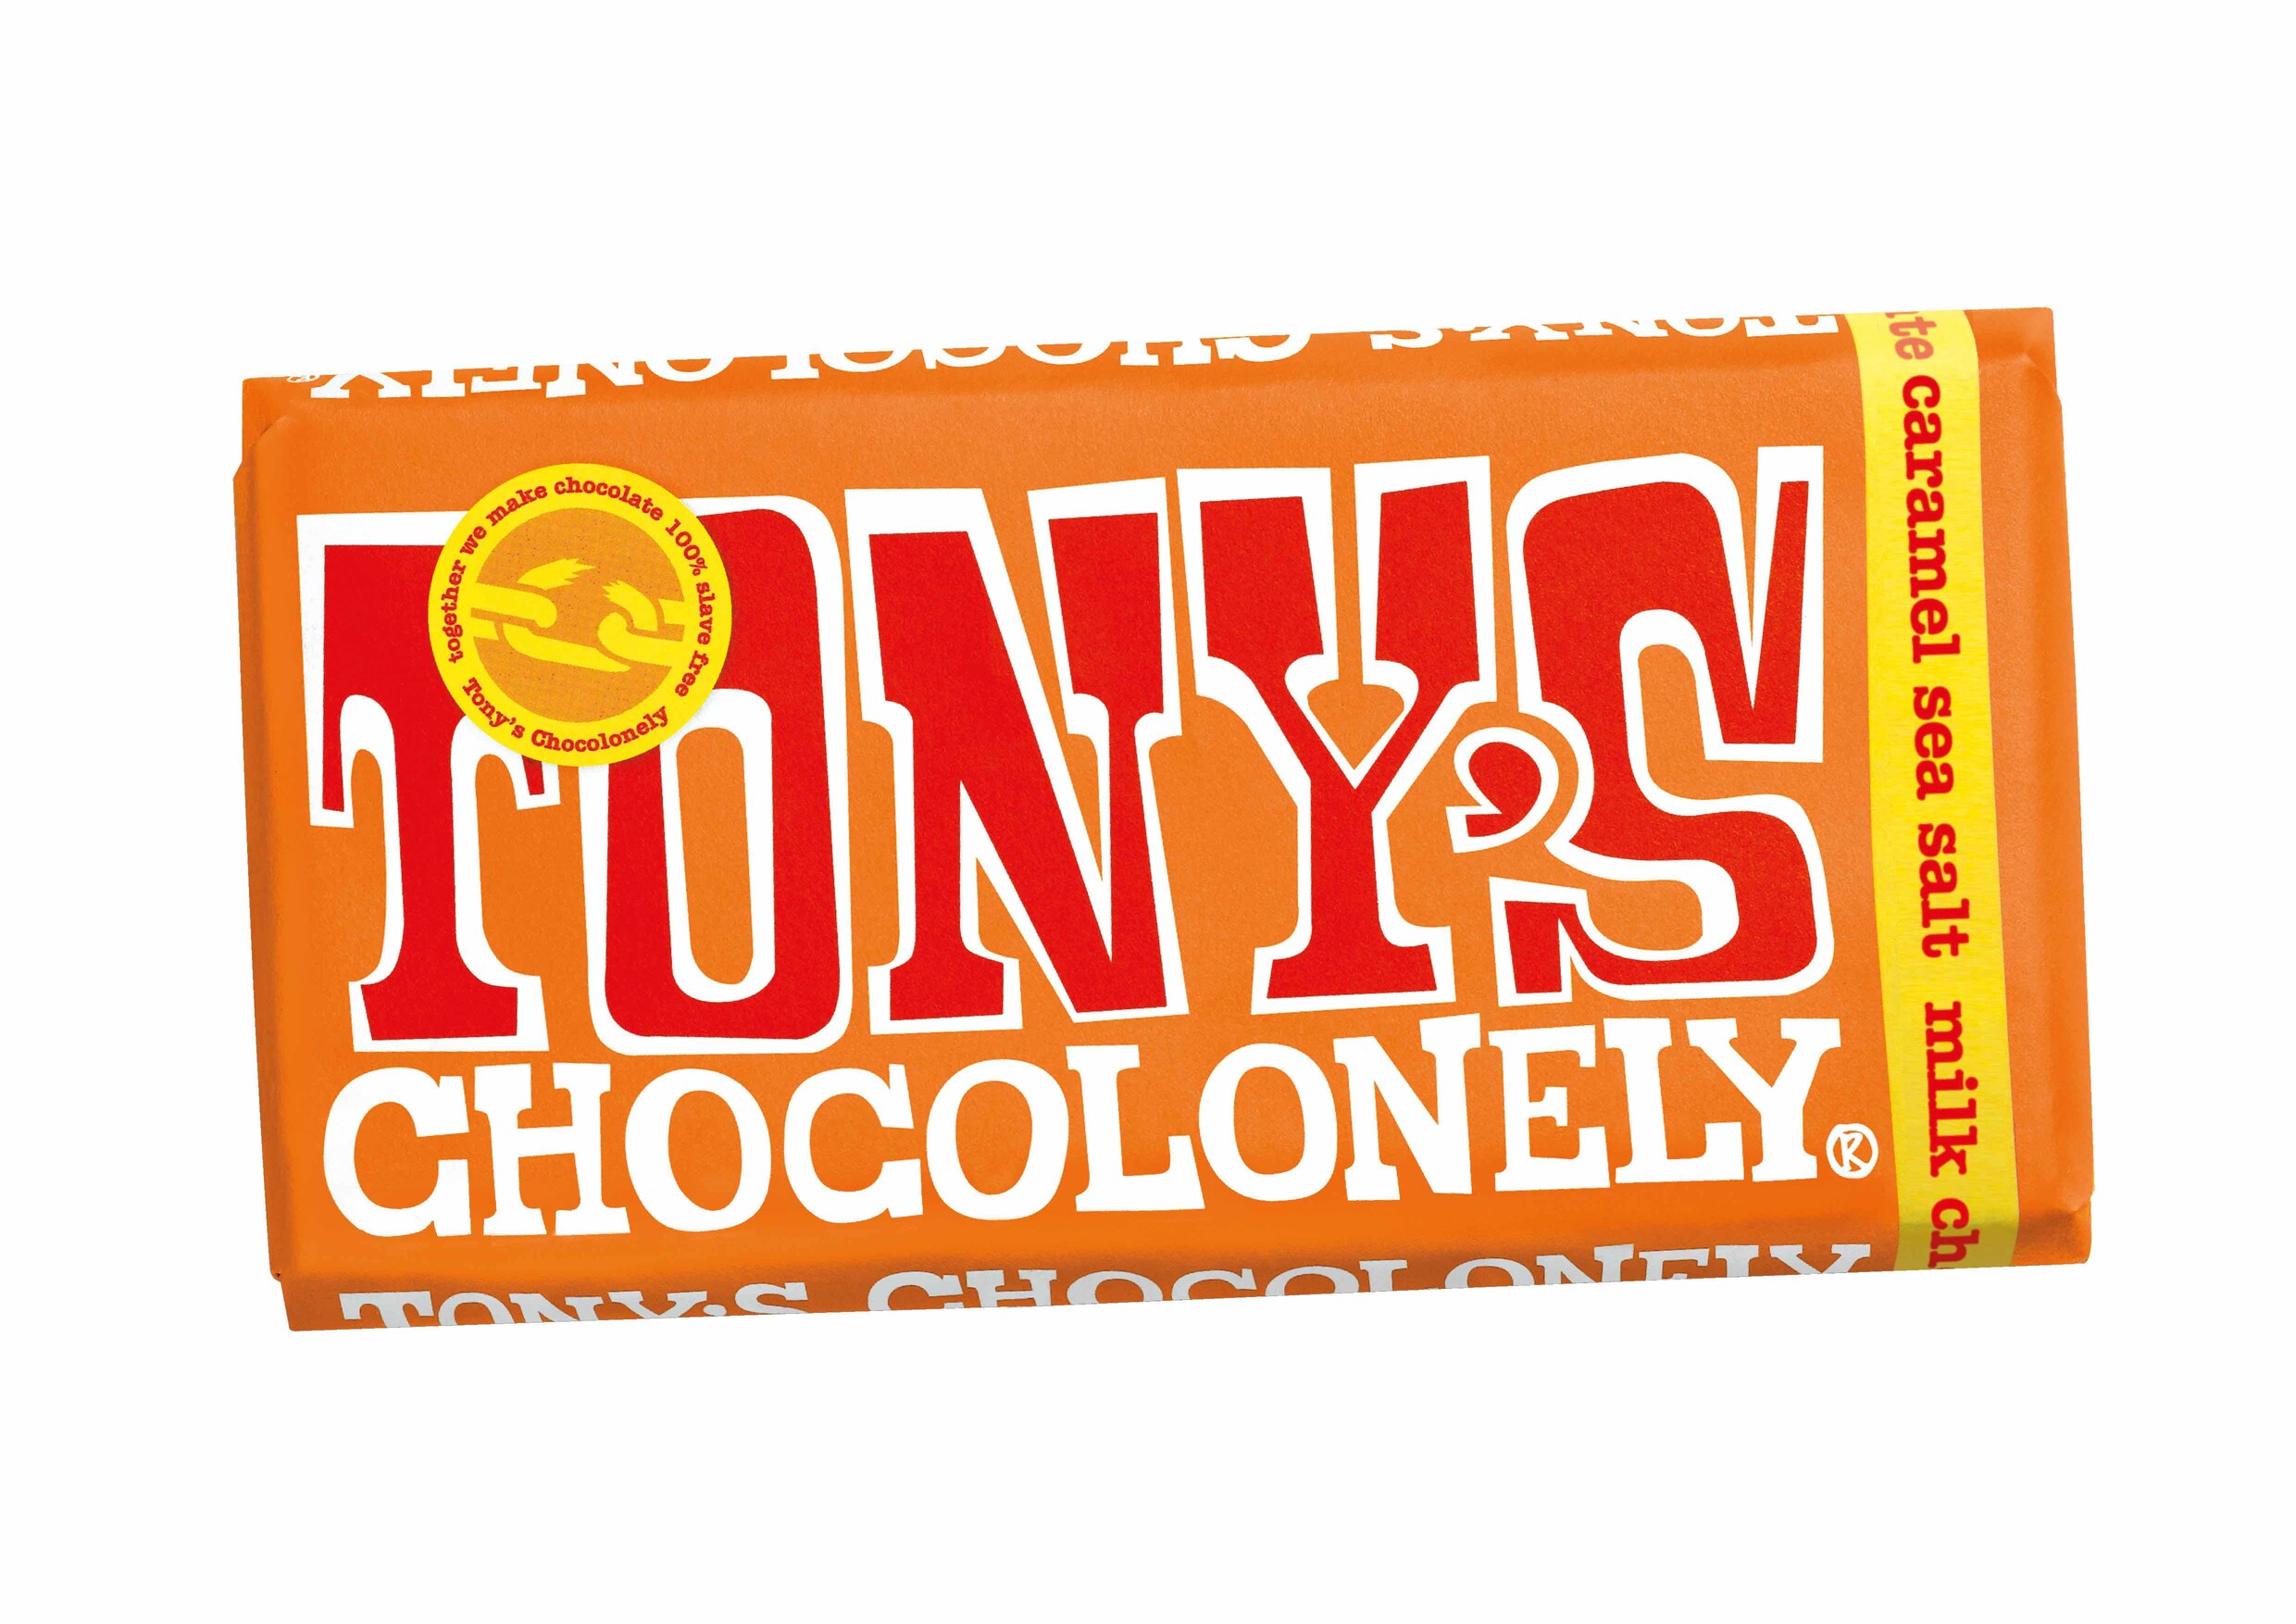 Tony's Chocolonely, de ‘ethische chocoladefabriek’, gaat samenwerken met multinationals